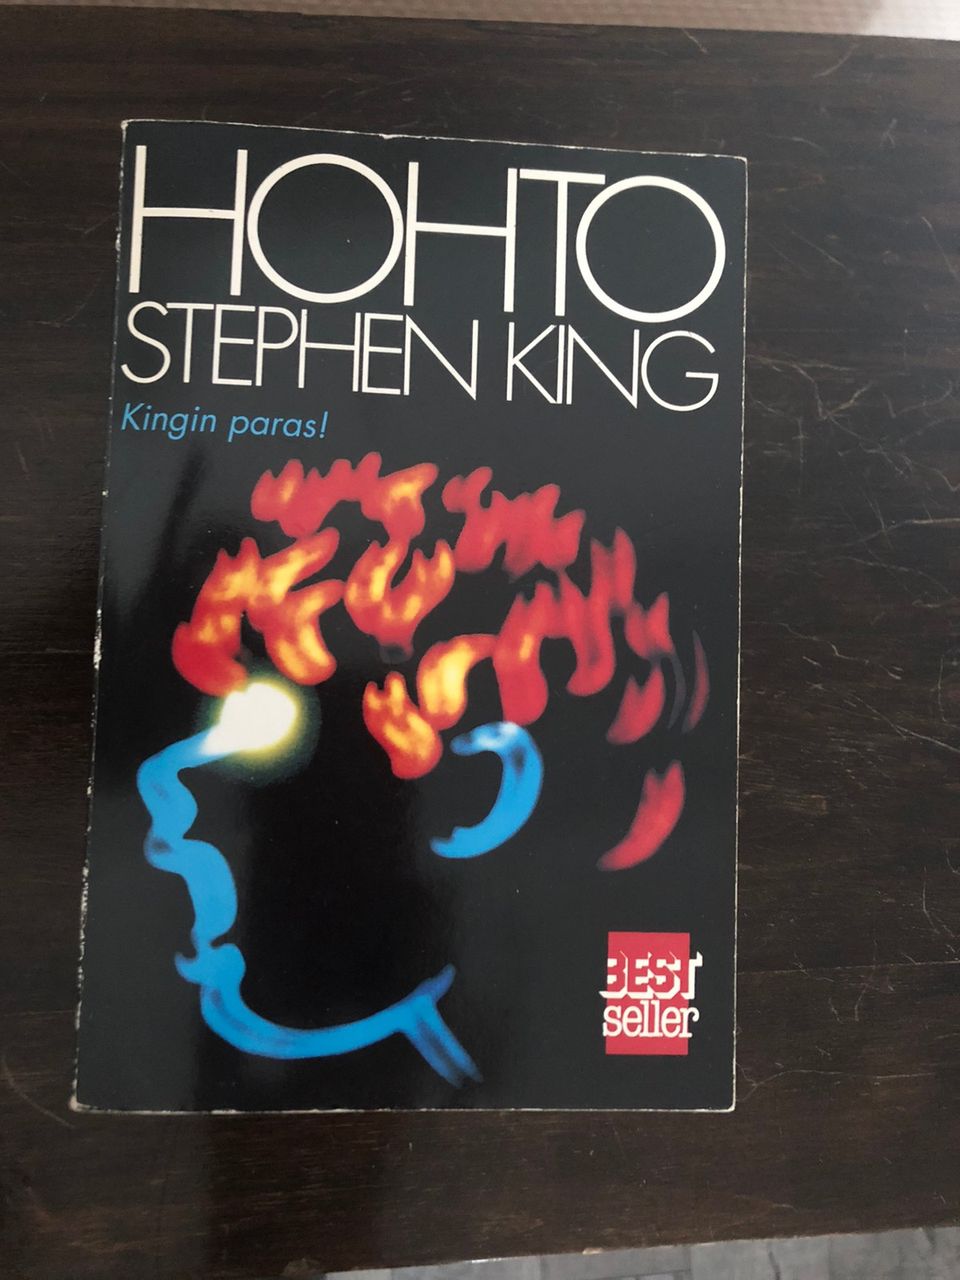 Hohto, pokkari, Stephen King